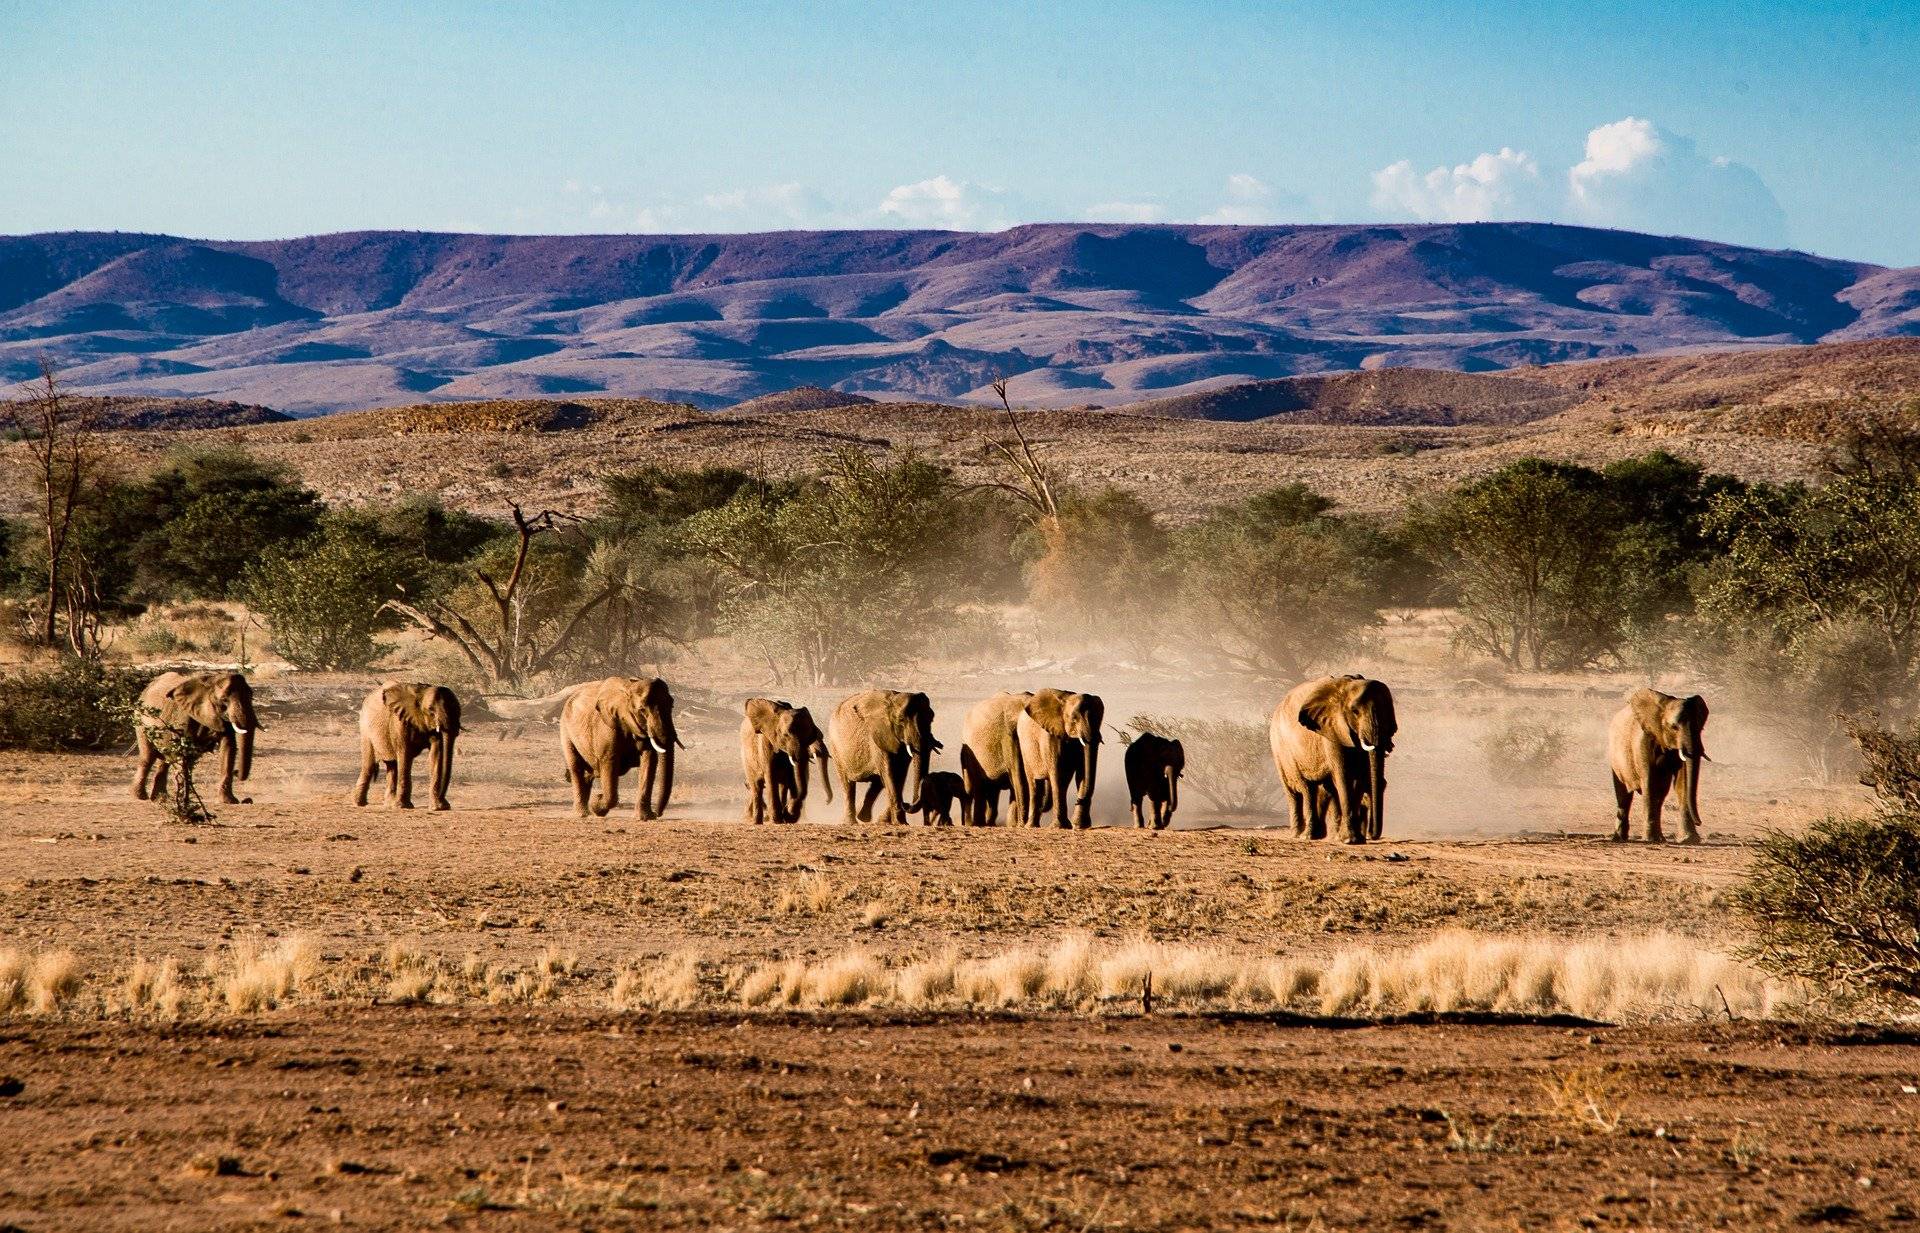 Mission de protection des éléphants du désert dans le Damaraland